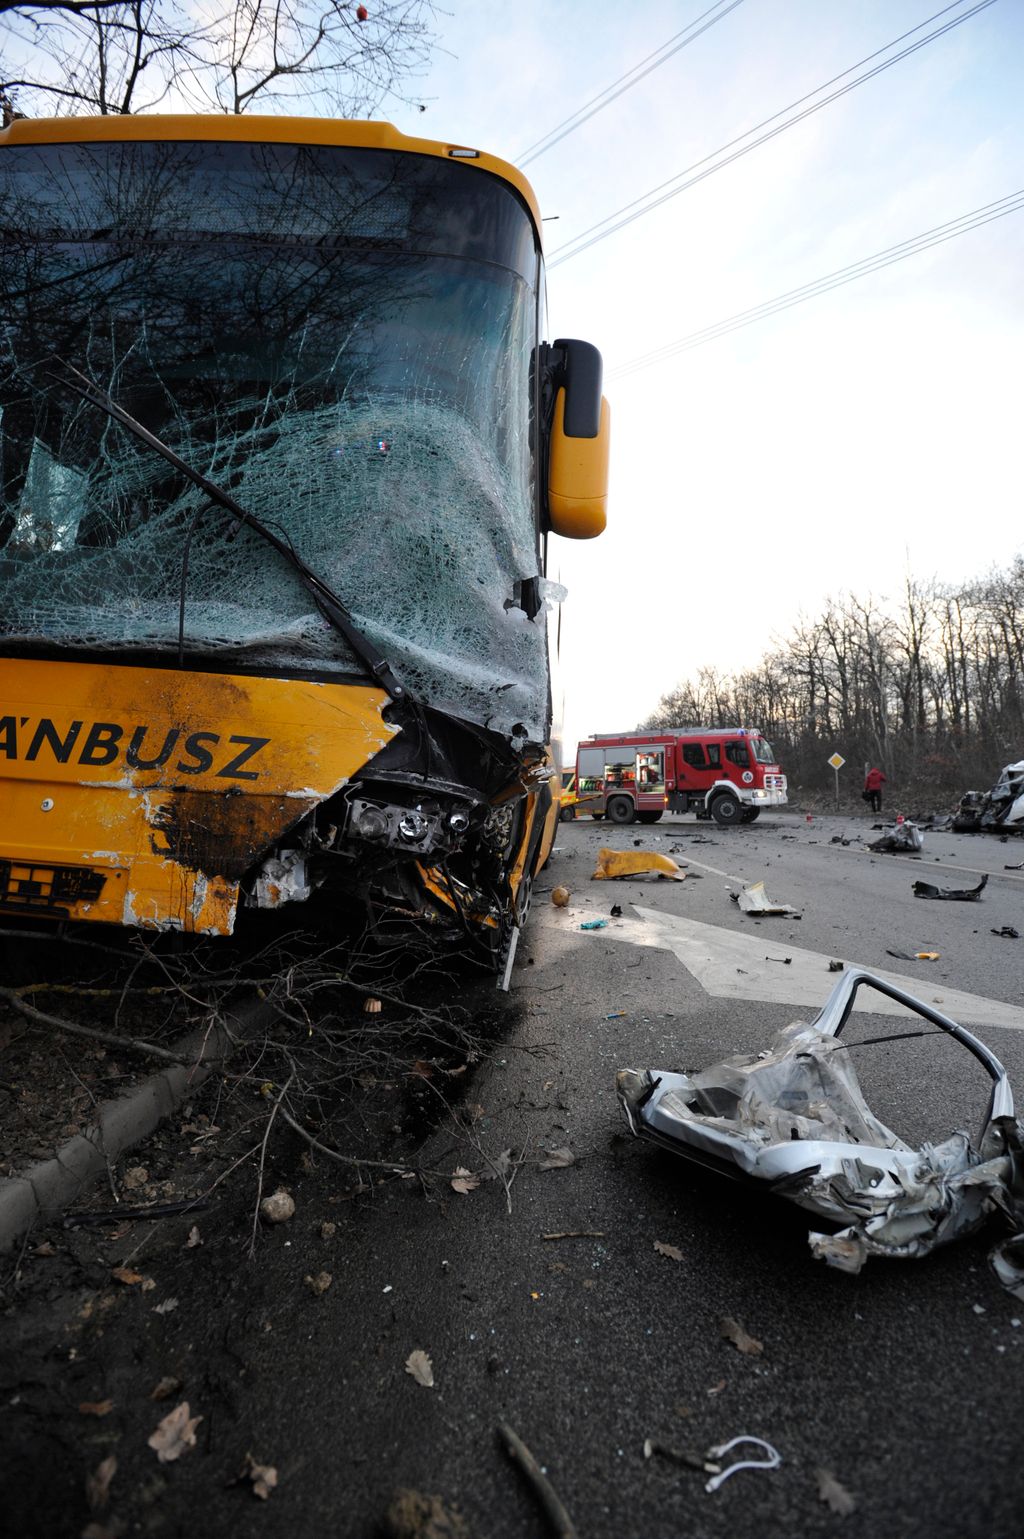 Gödöllő, 2021. január 21.
Ütközésben összetört autóbusz Gödöllőnél, a 3-as úton 2021. január 21-én. Egy autós ismeretlen okból sávot váltott, majd összeütközött a busszal. Az autót vezető férfi a helyszínen meghalt, a busz sofőrje és a jármű tizenhat utasa könnyebb sérüléseket szenvedett a balesetben.
MTI/Mihádák Zoltán 